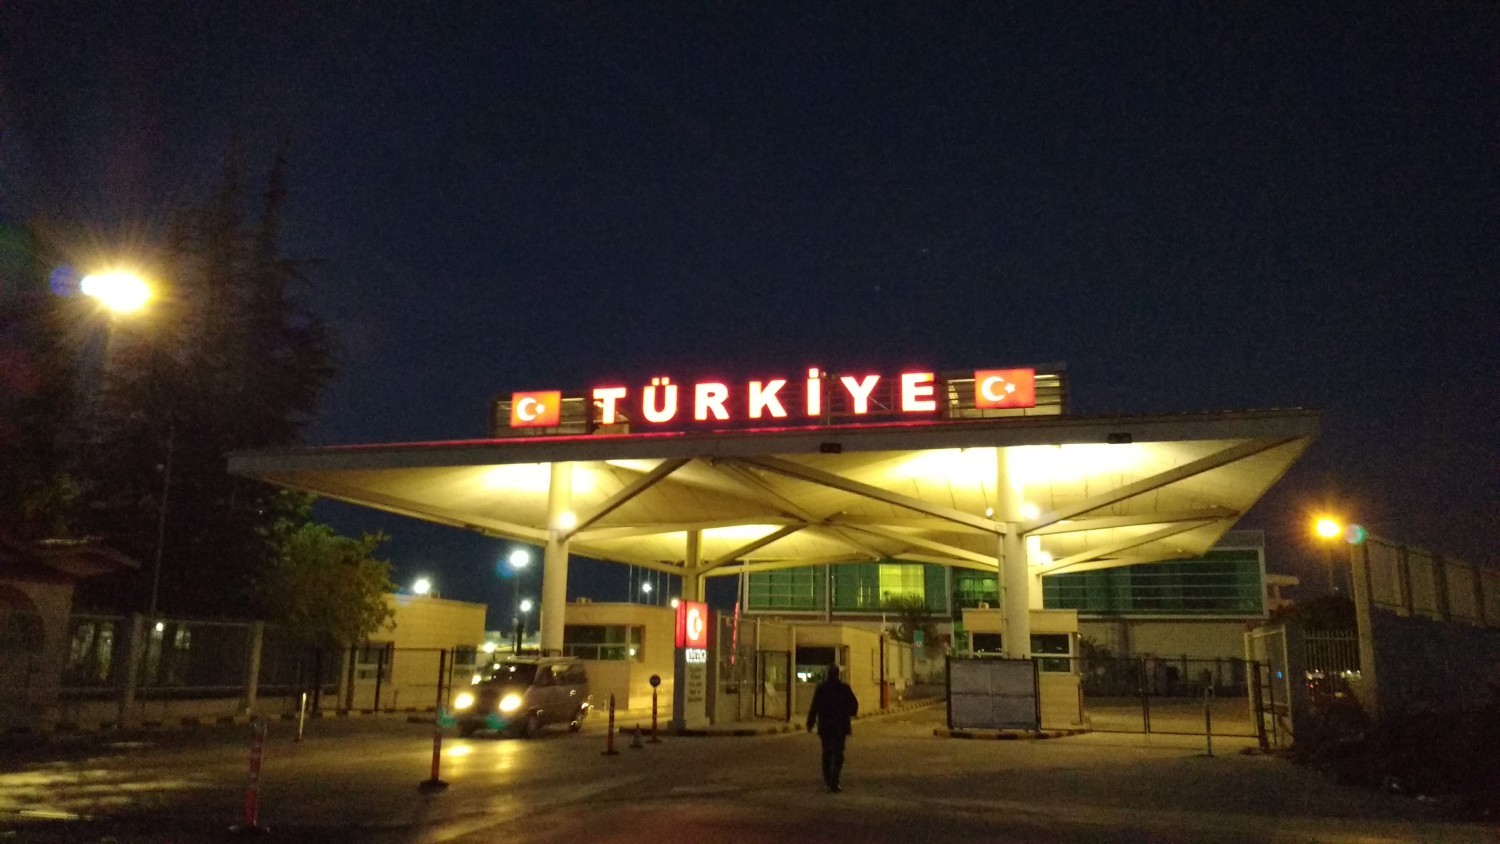 Finally entering Turkey